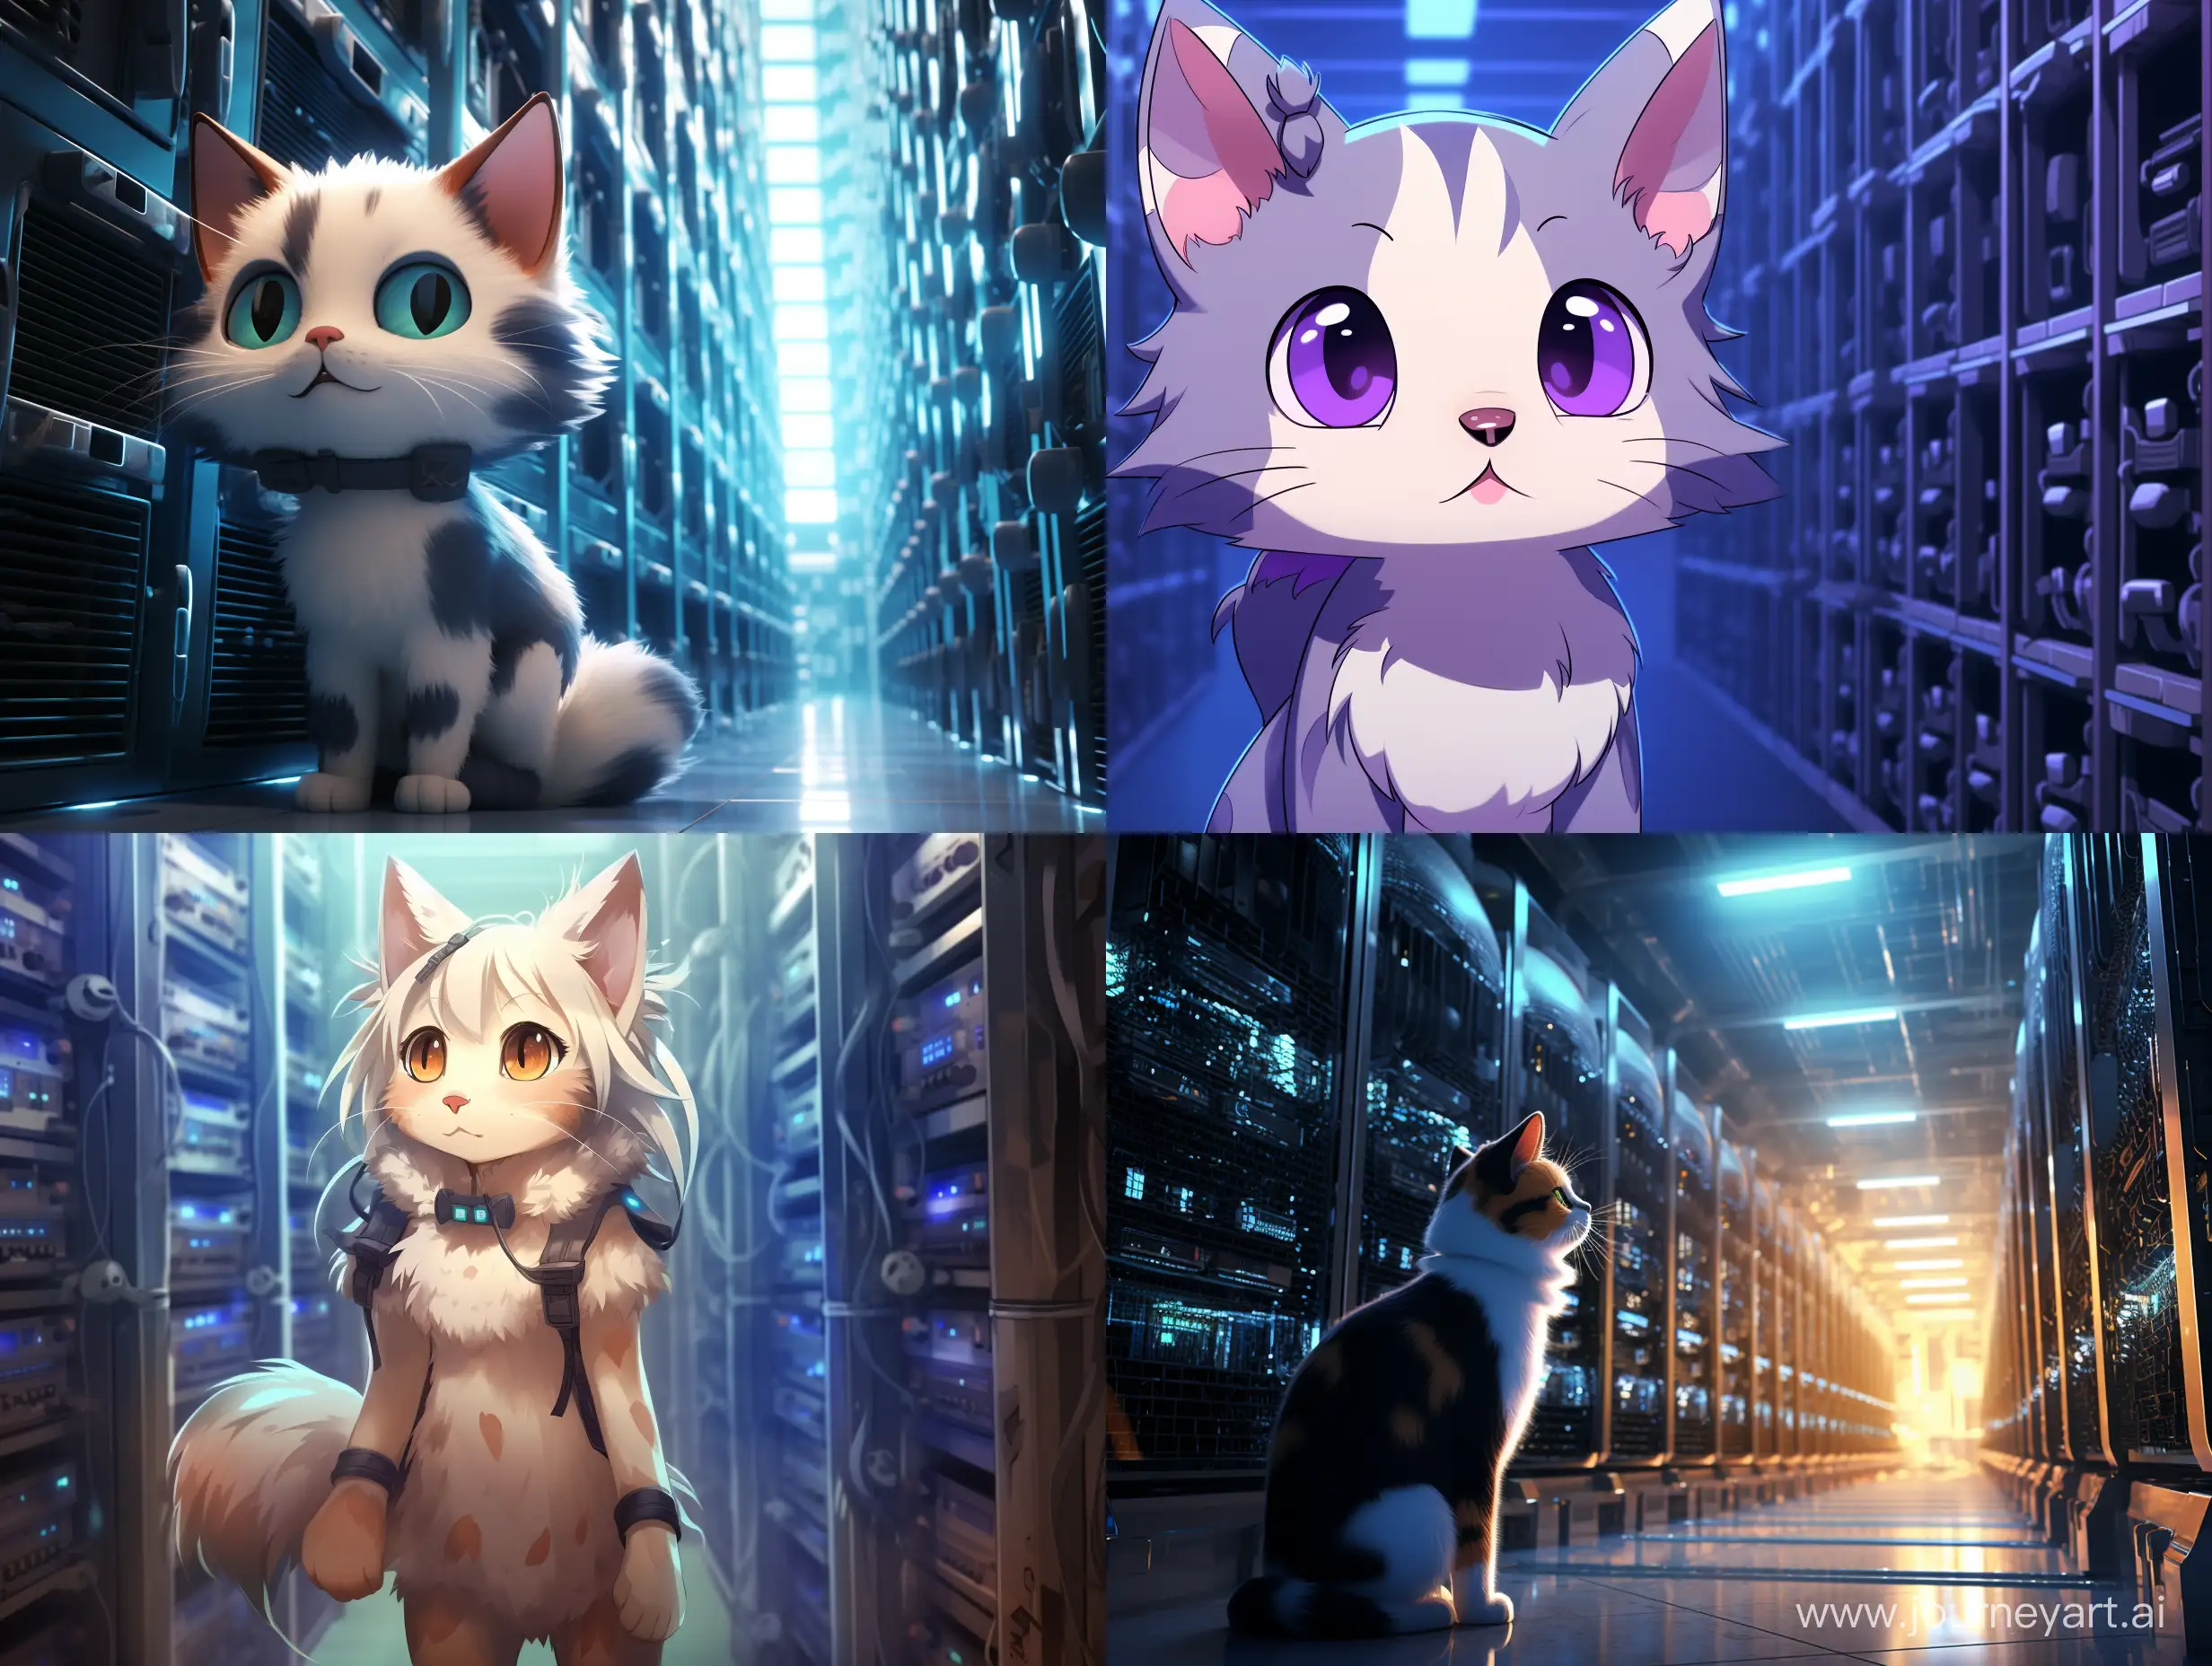  кошка в датацентре серверов в виде аниме